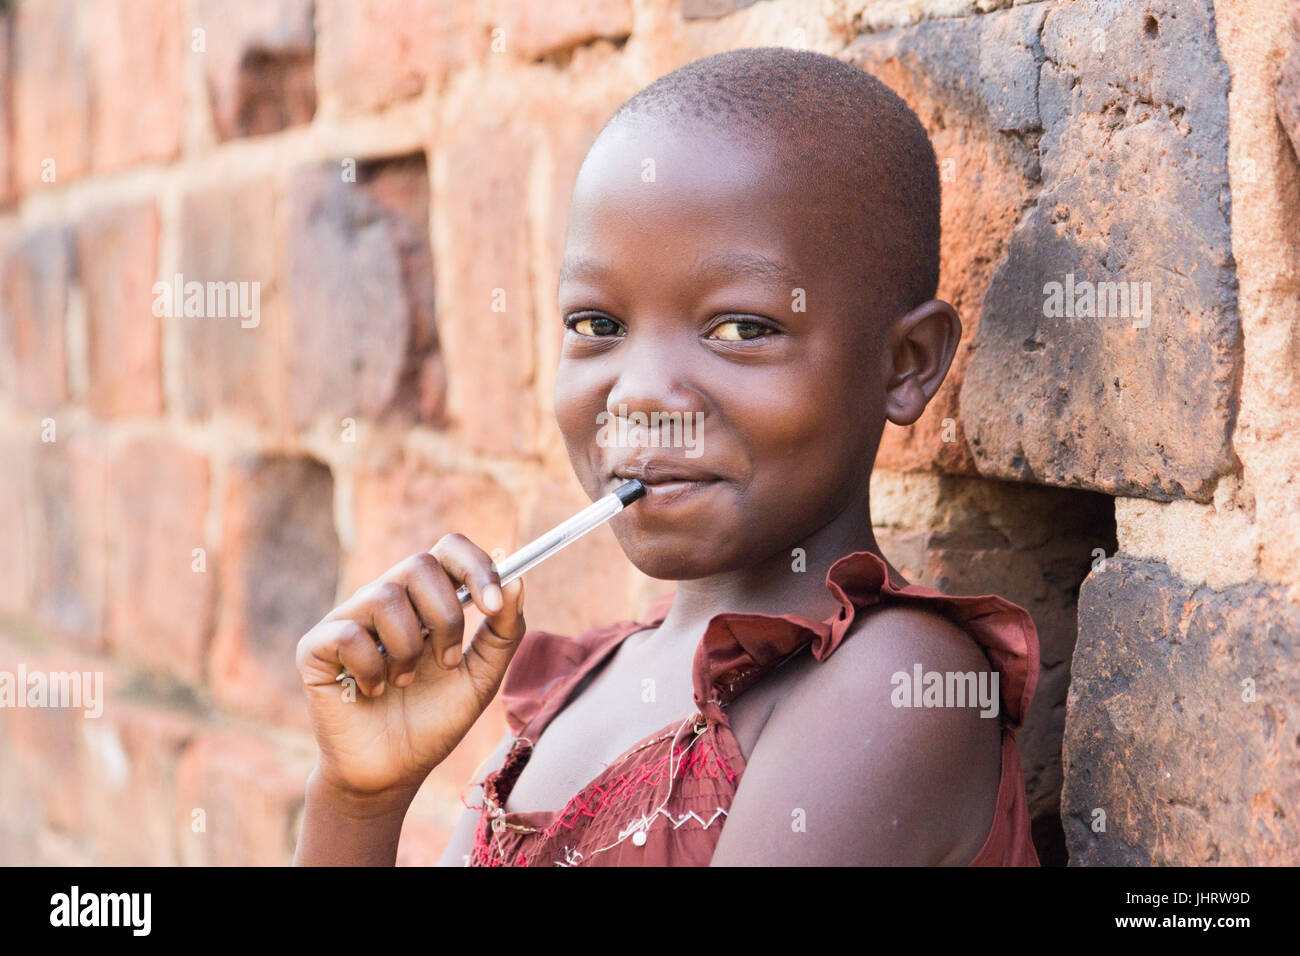 Un noir de 11 ans jeune fille ougandaise en souriant et tenant un stylo contre sa bouche et appuyé contre un mur de briques à l'appareil photo Banque D'Images